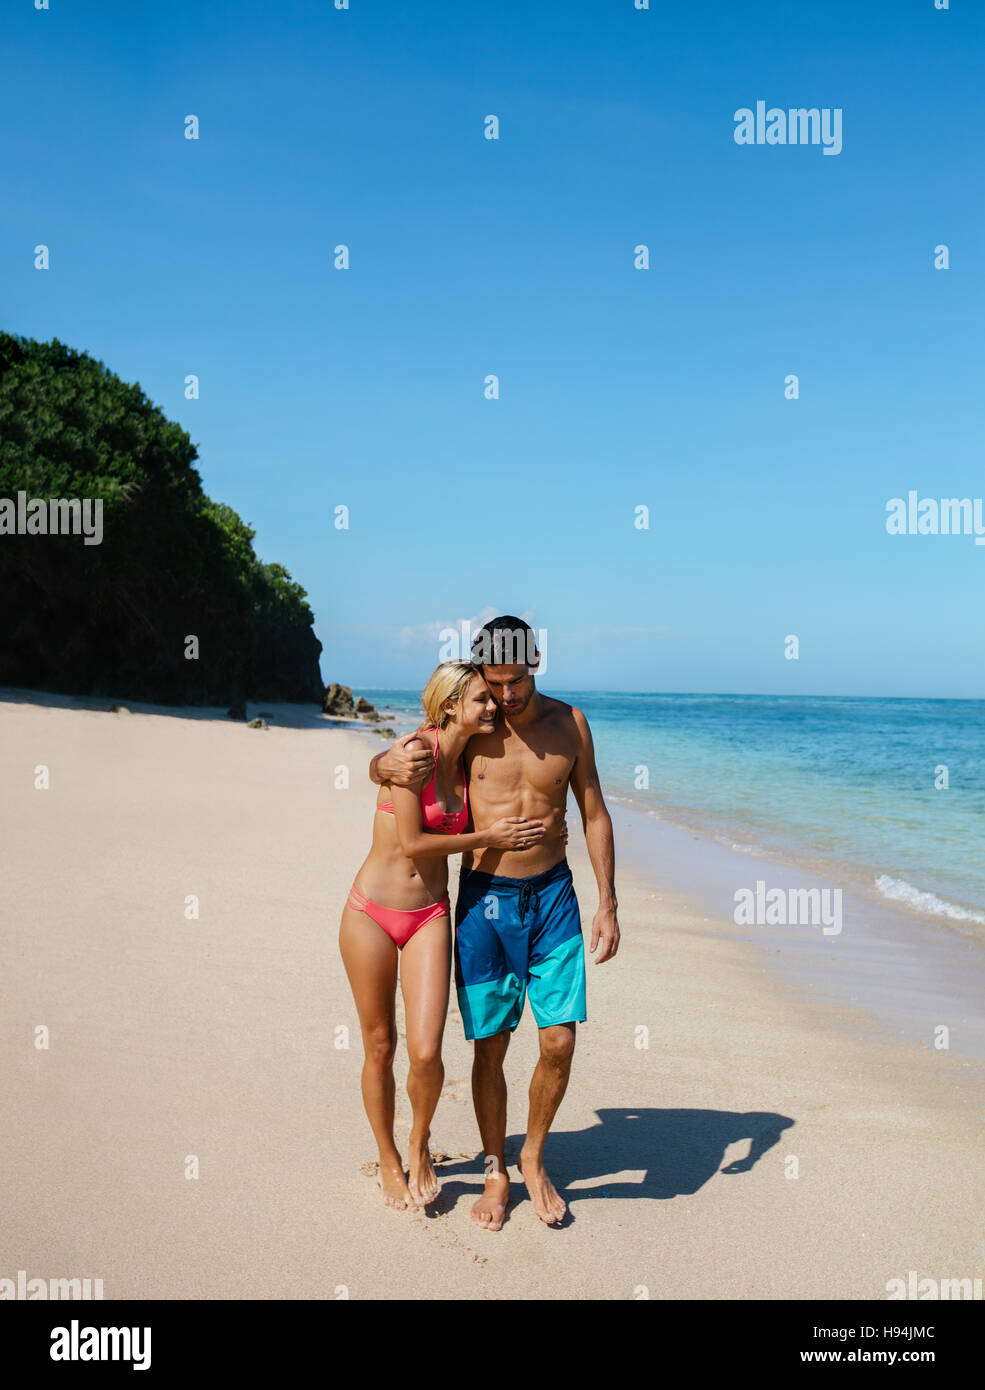 Aufnahme des jungen Mann und Frau zu Fuß auf den tropischen Strand. Romantisch zu zweit spazieren am Strand, Sommerurlaub genießen. Stockfoto